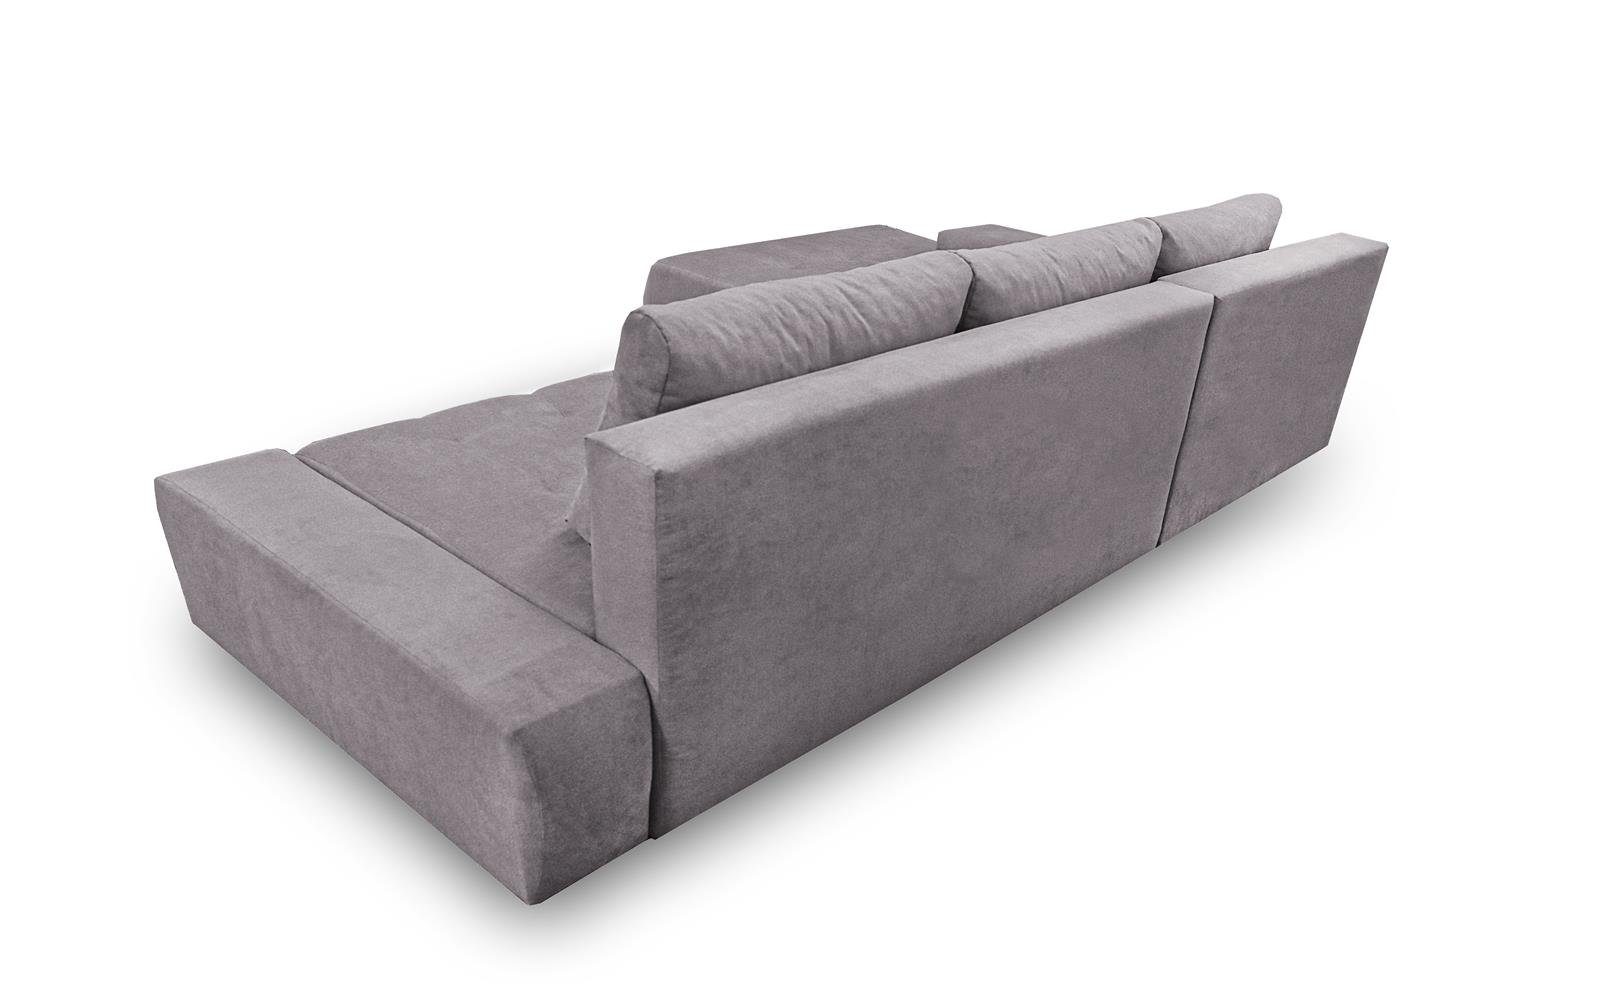 DRACO Rosa Sofa Wohnzimmer Ecksofa 19) Couch (aston Bettkasten Beautysofa Schlaffunktion, mit Ecksofa